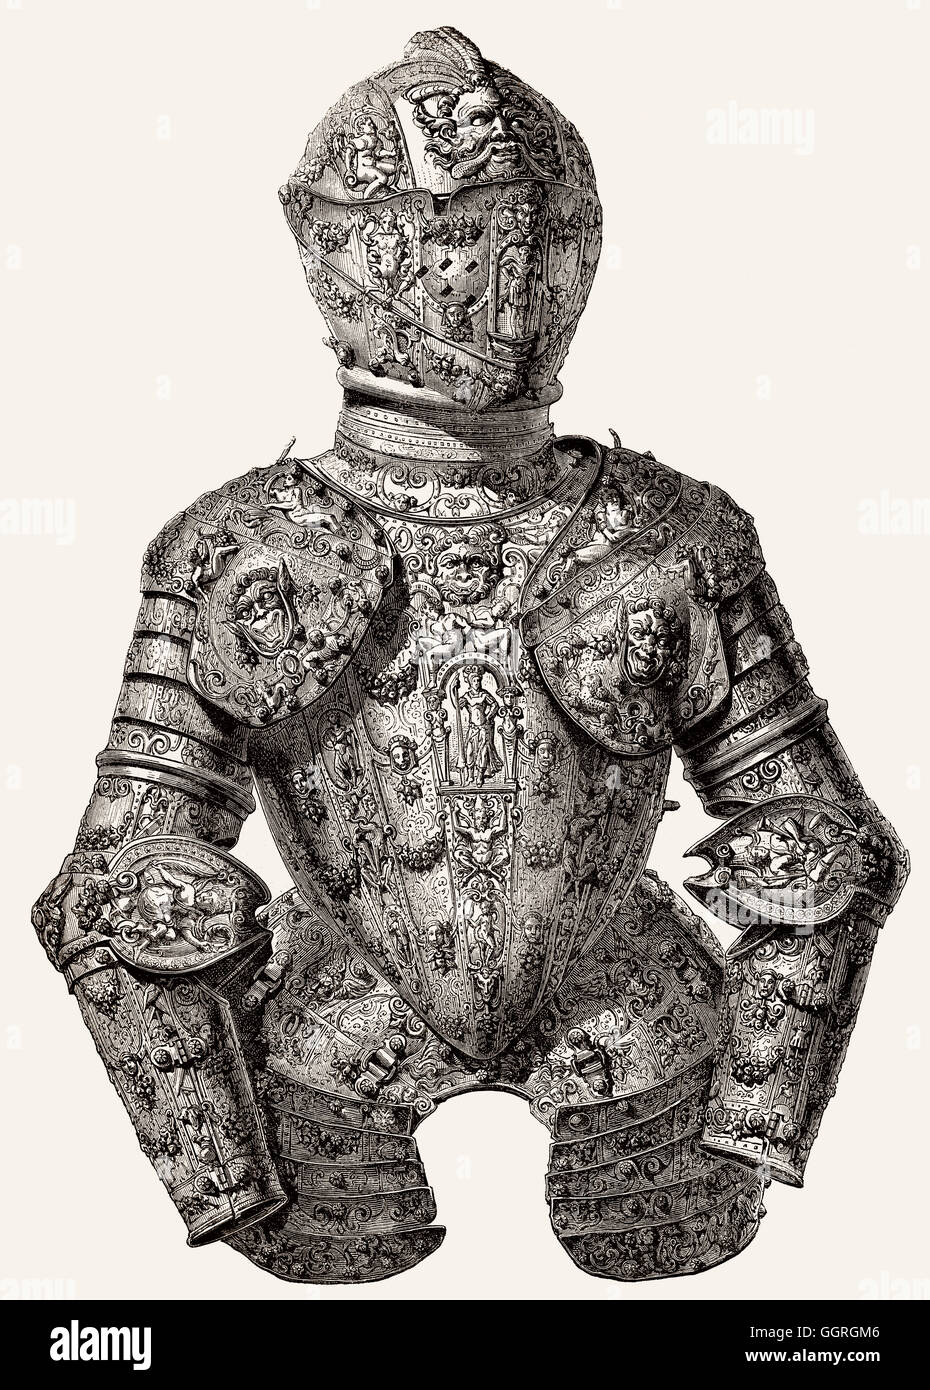 Medieval armour, 17th century Stock Photo